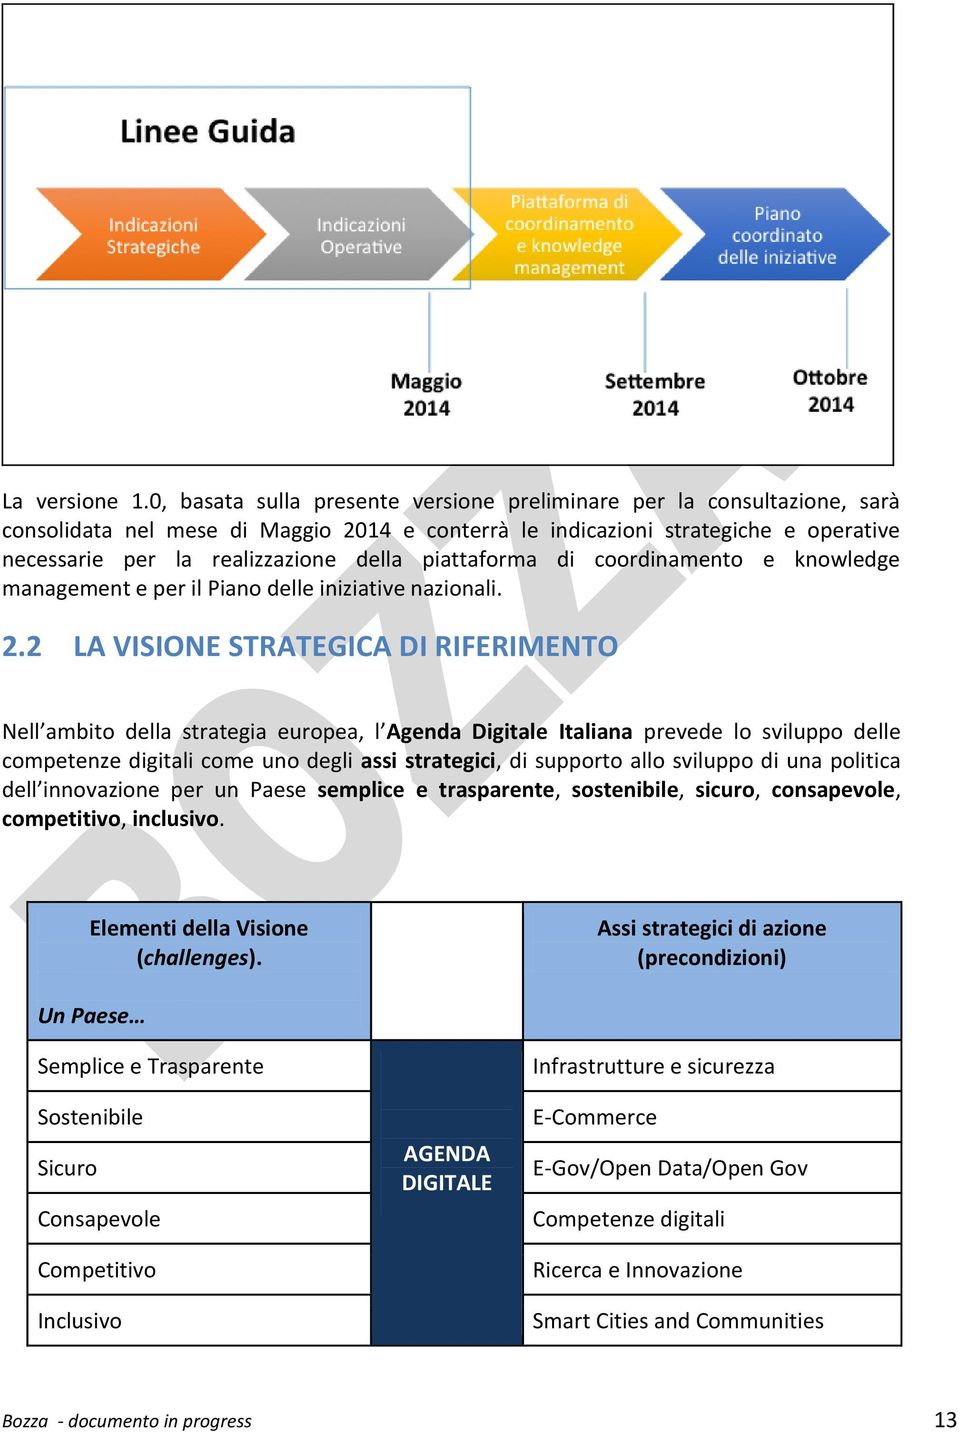 piattaforma di coordinamento e knowledge management e per il Piano delle iniziative nazionali. 2.